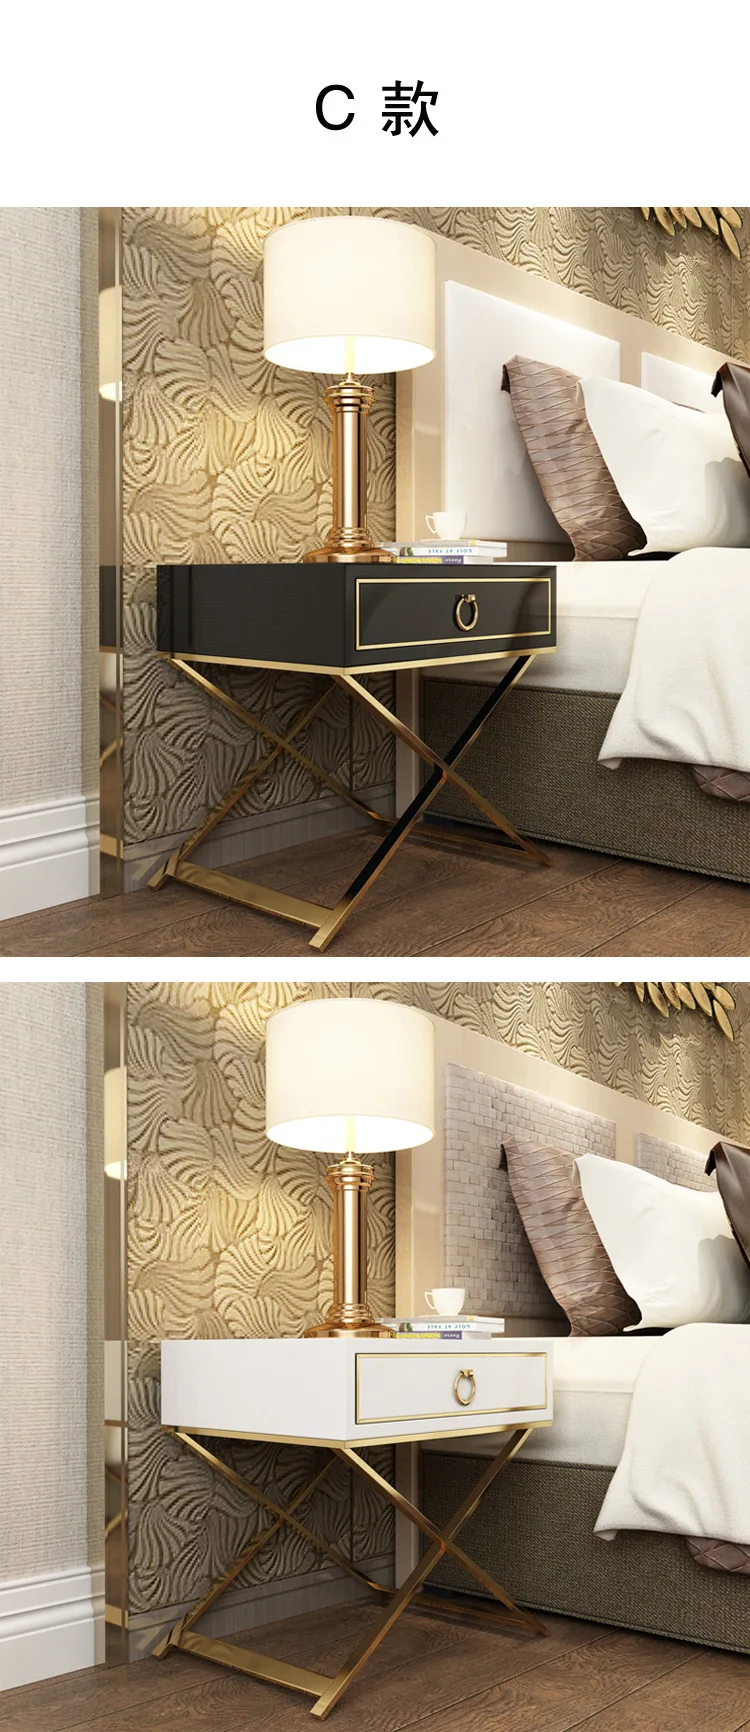 Белый черный Современный Железный литой золотой тумбочка кофе диван конец прикроватный столик мебель для дома постельный шкаф спальня